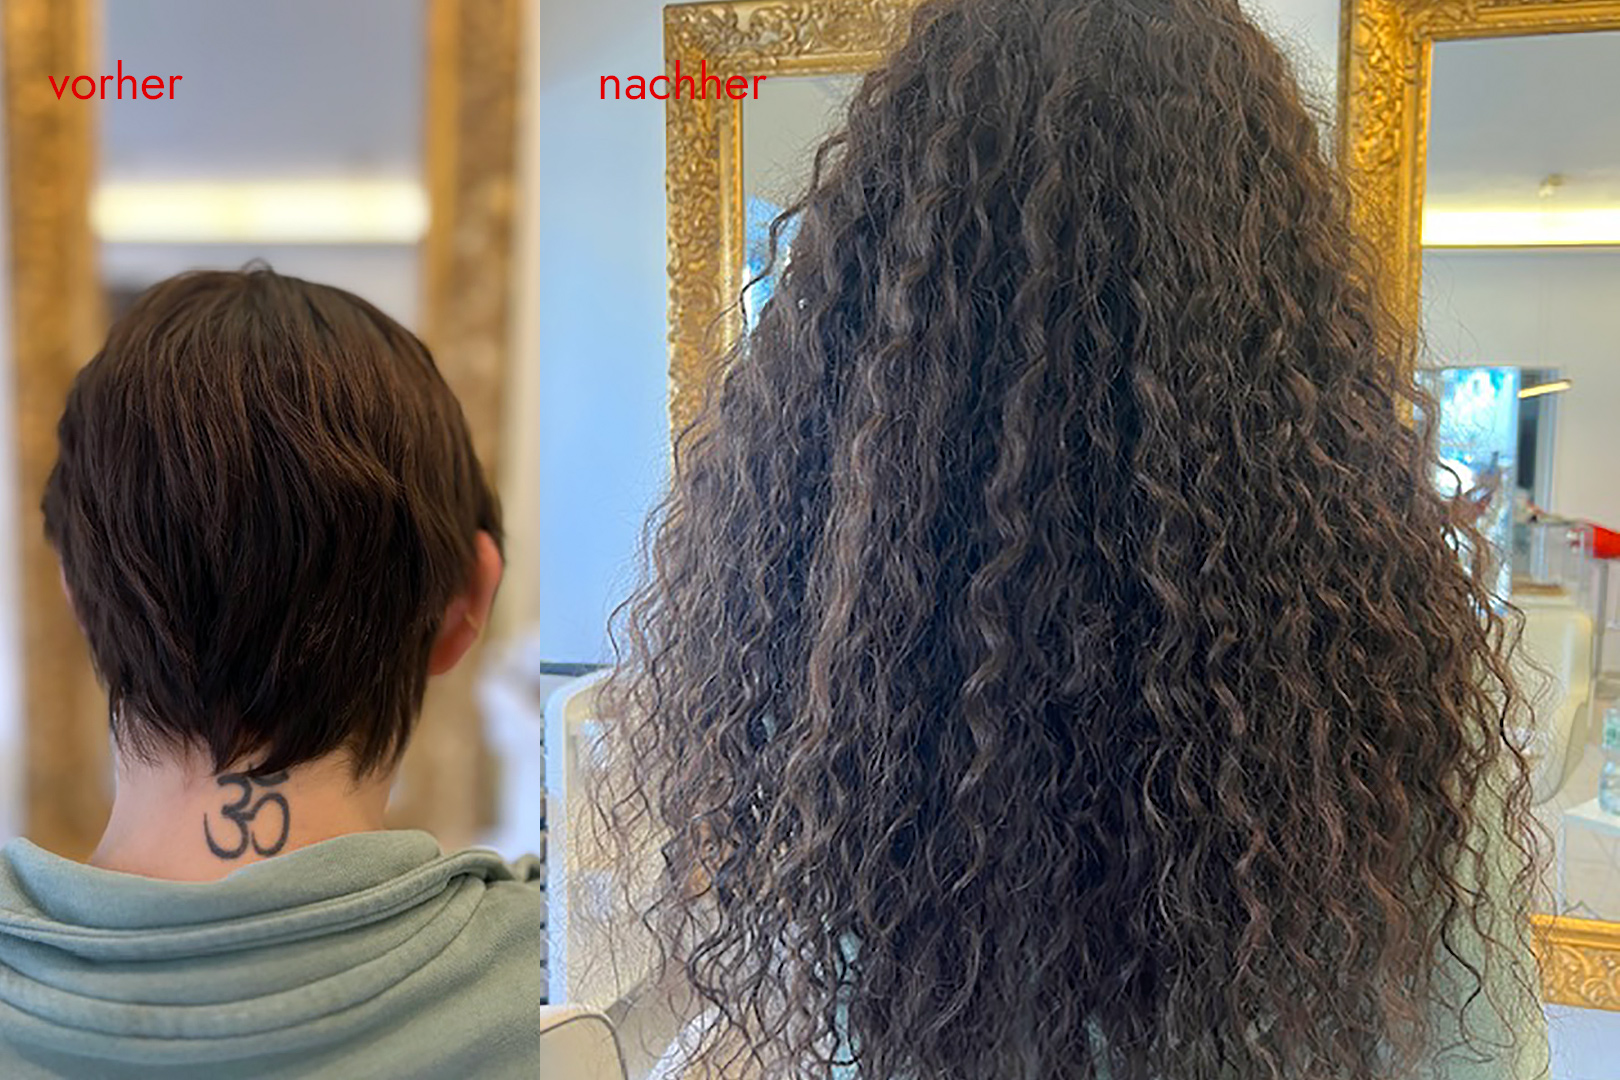 Angelicas Hair Extensions: Kundin vorher und nachher mit Haarverlängerung - curly look